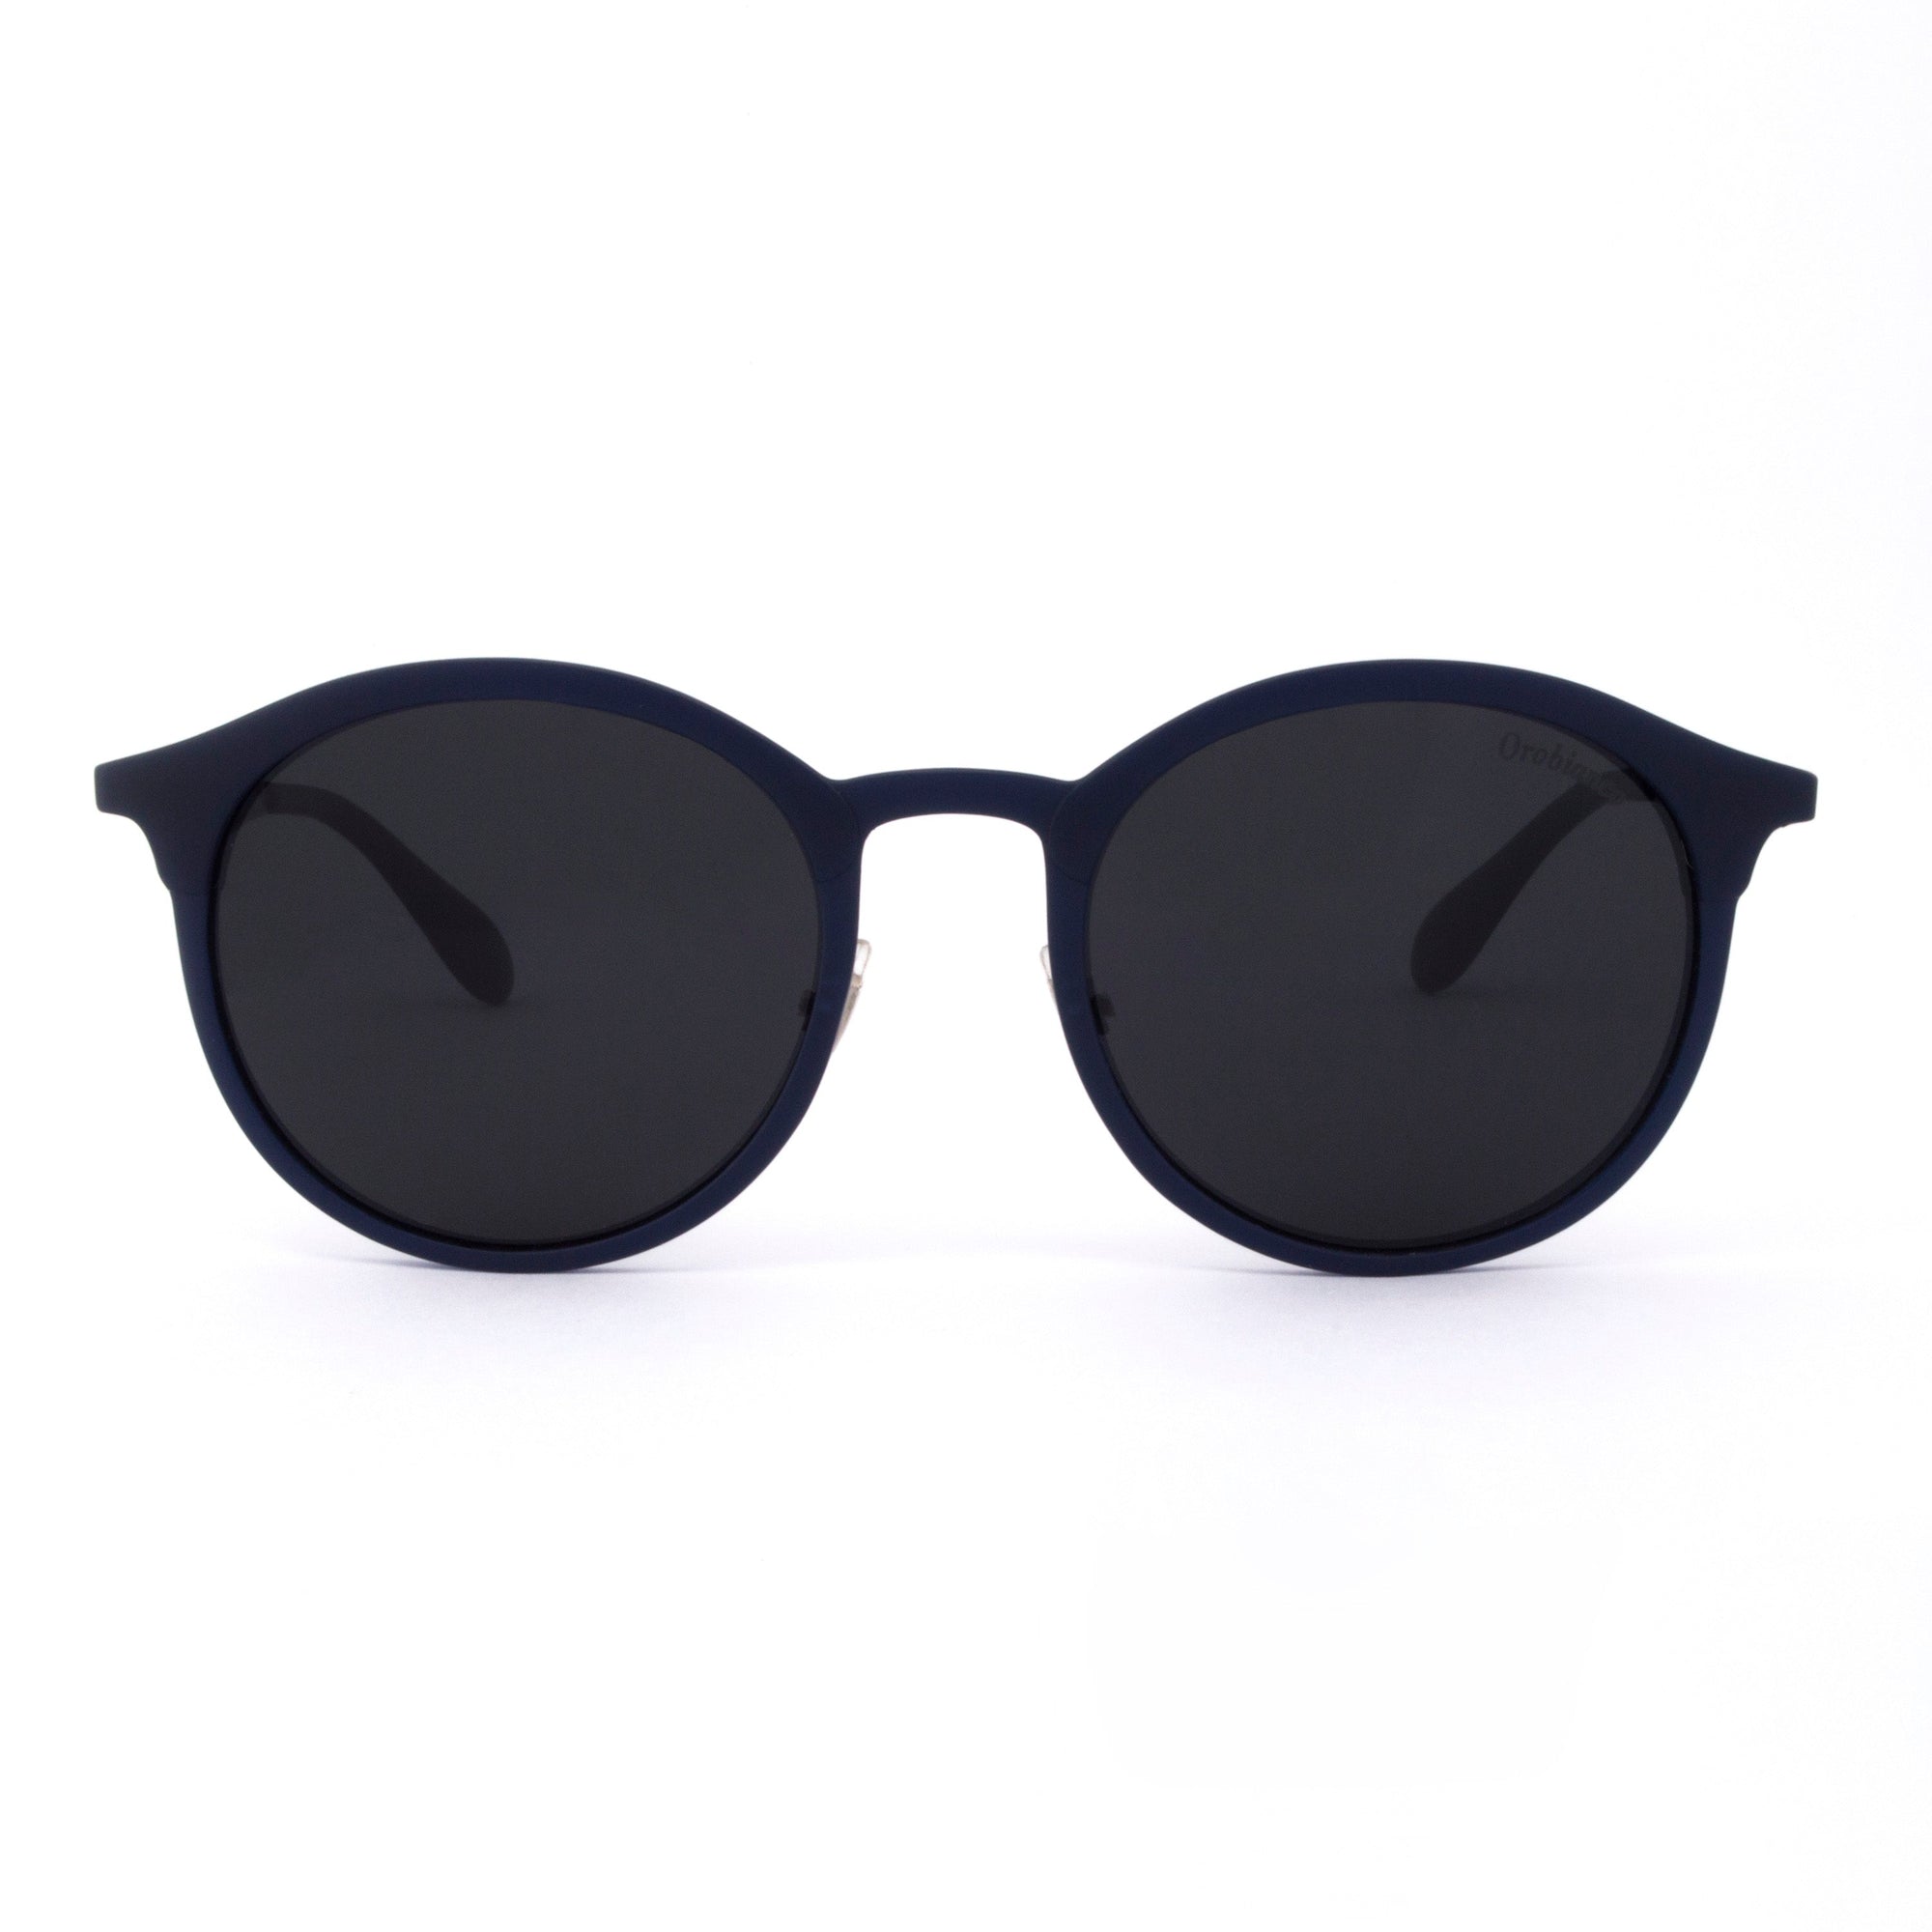 Orobianco Sunglasses-Sunglasses-Orobianco-Navy Brown-Cufflinks.com.sg